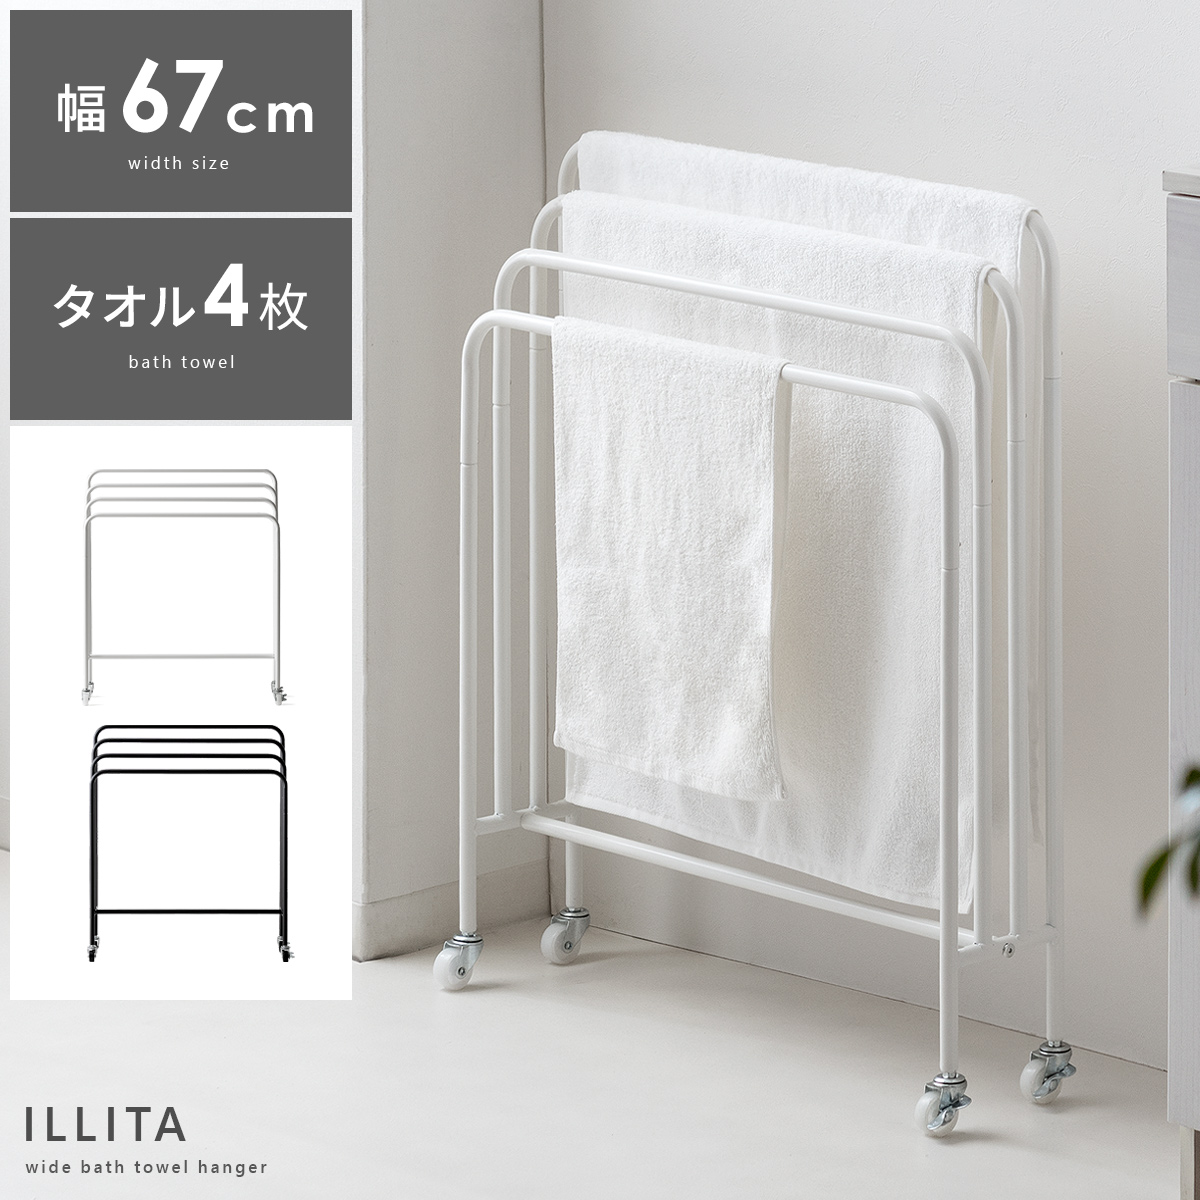 バスタオルハンガー ILLITA(イリータ) 67cmタイプ 【公式】 エア・リゾーム インテリア・家具通販